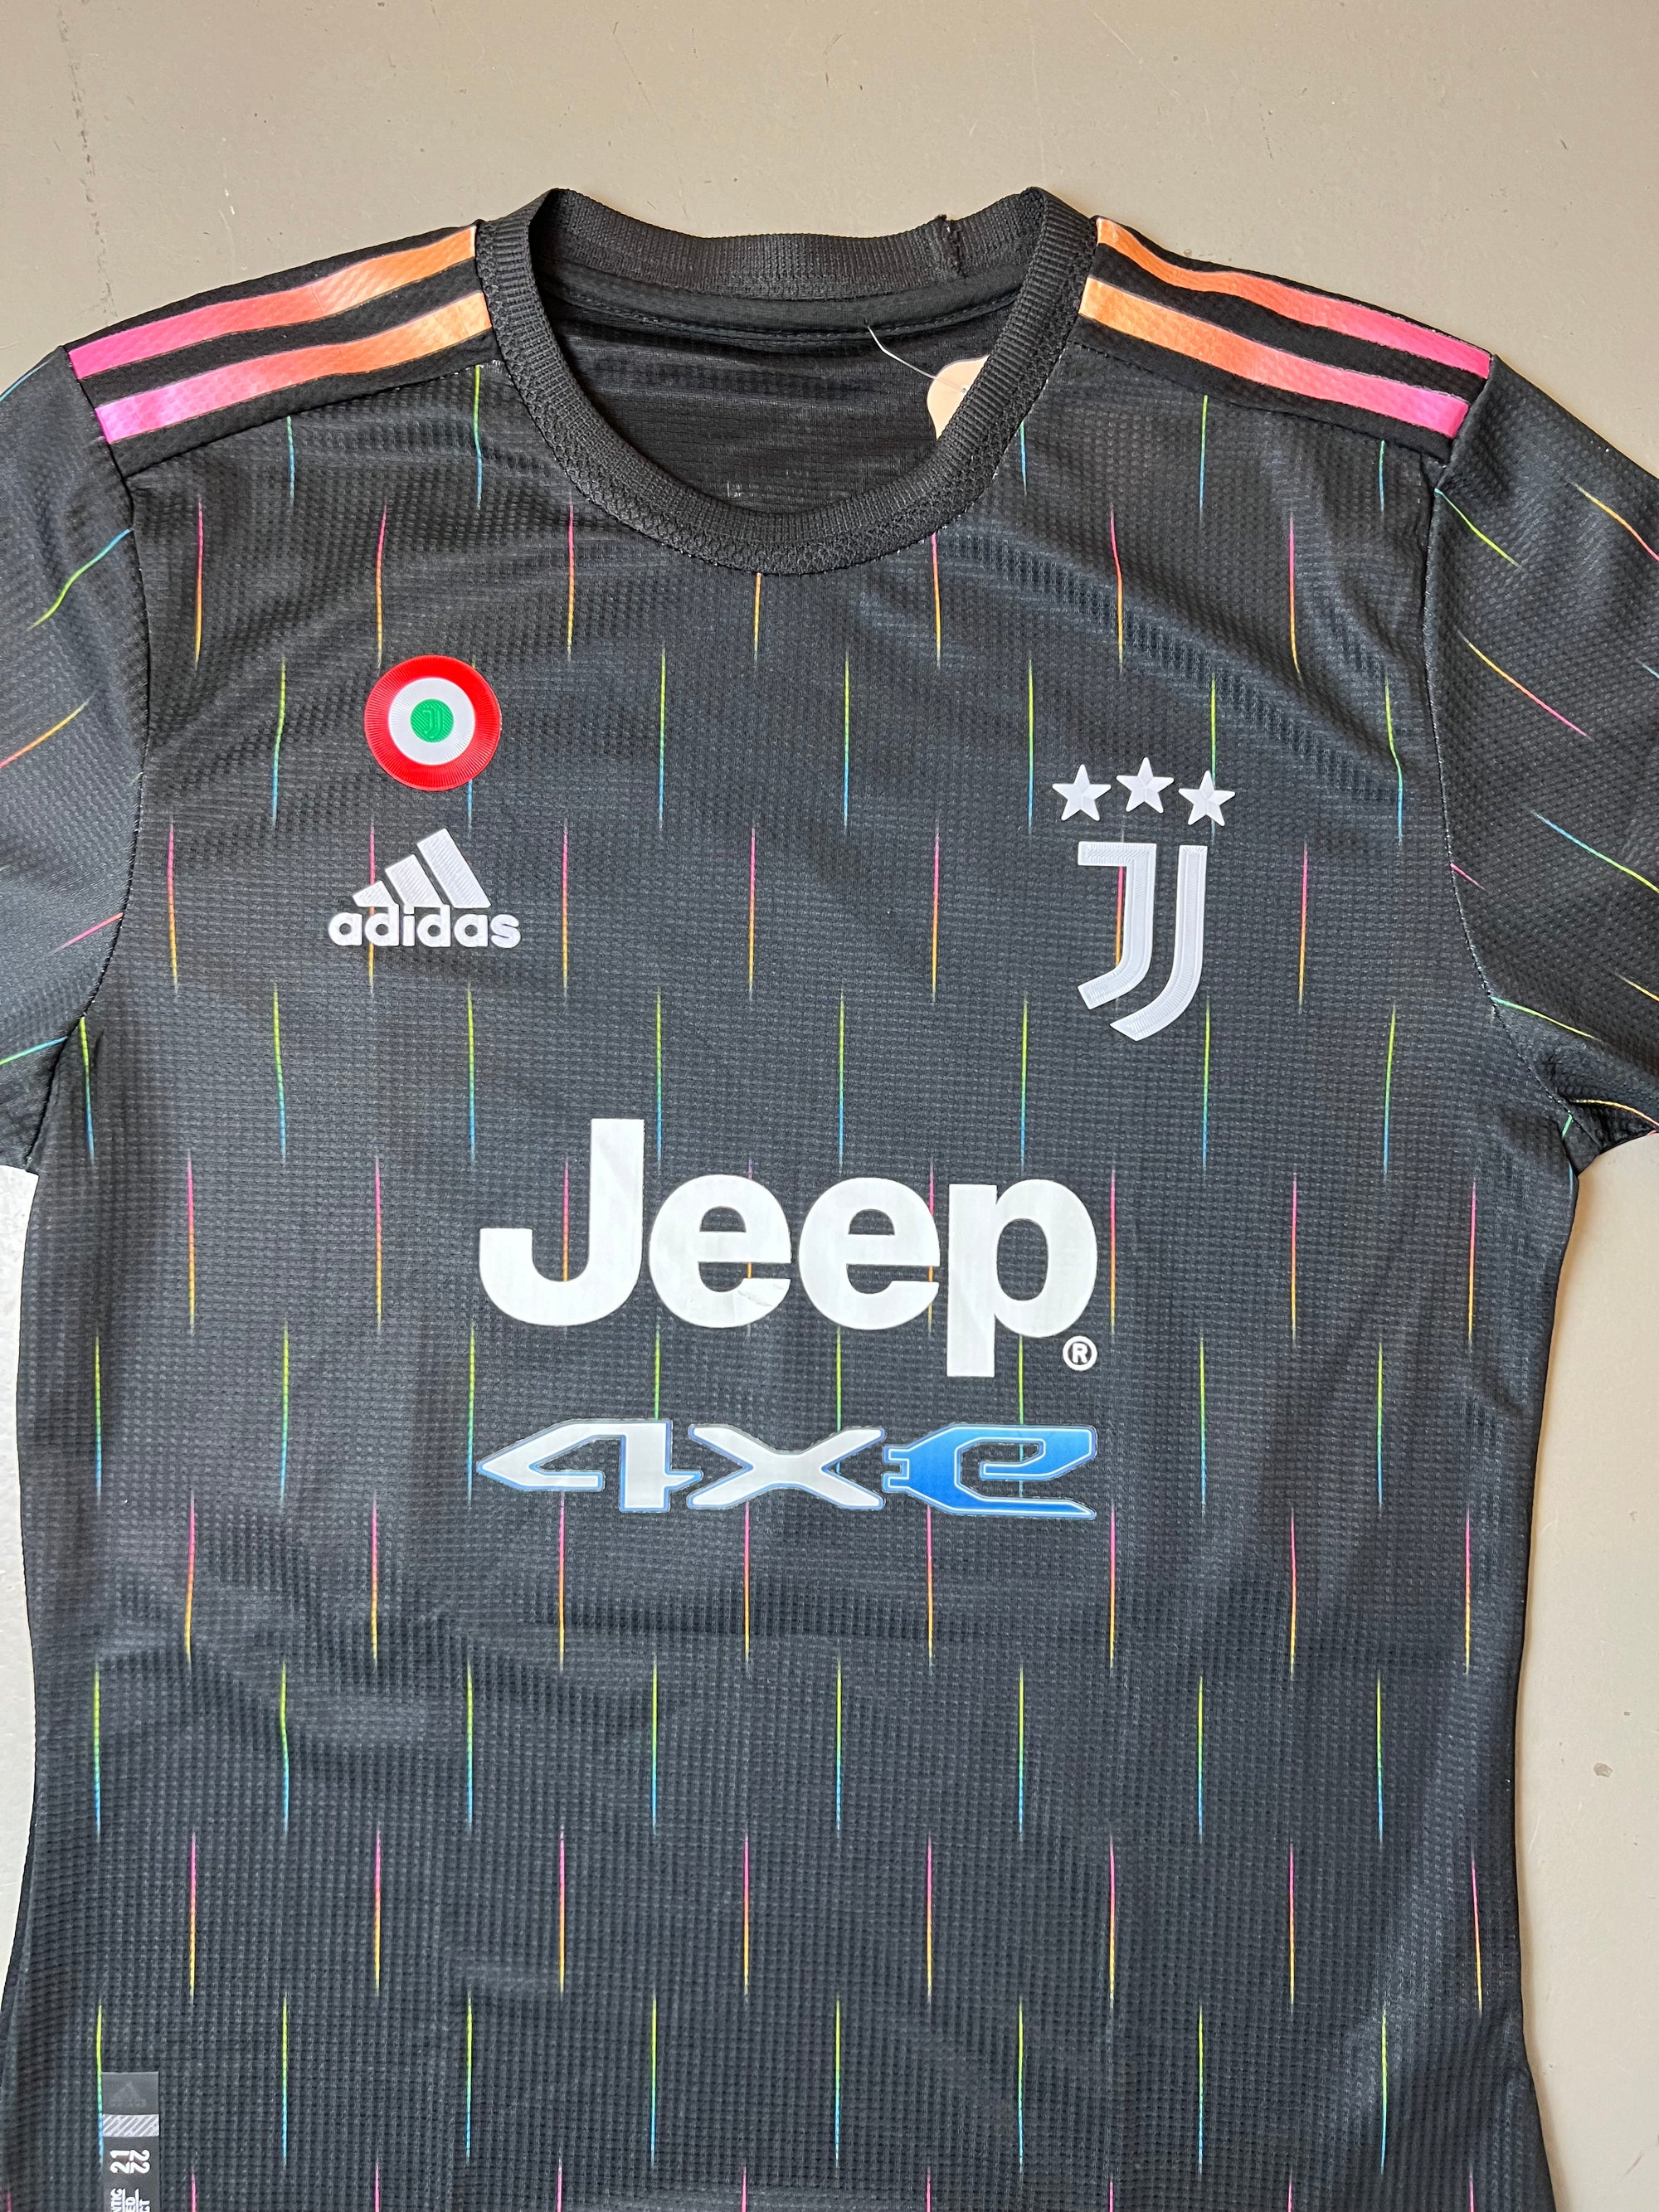 Vintage Adidas Juventus Soccer Jersey S/M